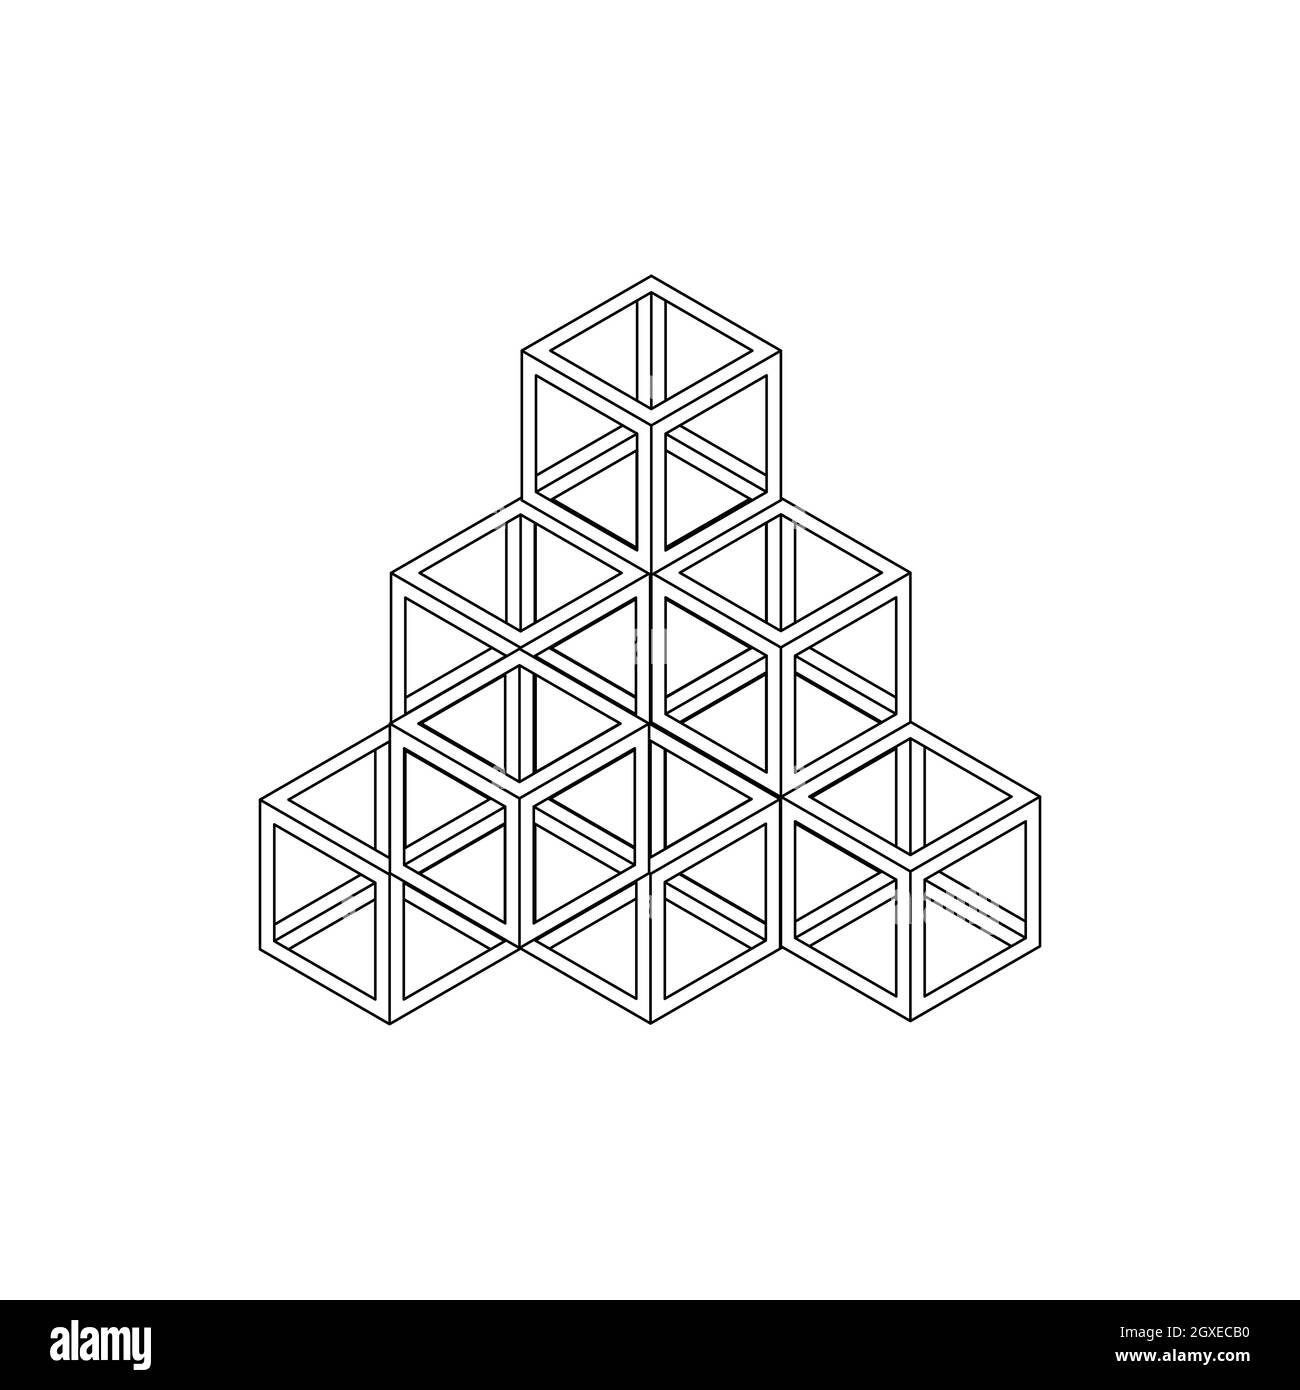 Würfelpyramidensymbol im isometrischen 3d-Stil, isoliert auf weißem Hintergrund Stockfoto